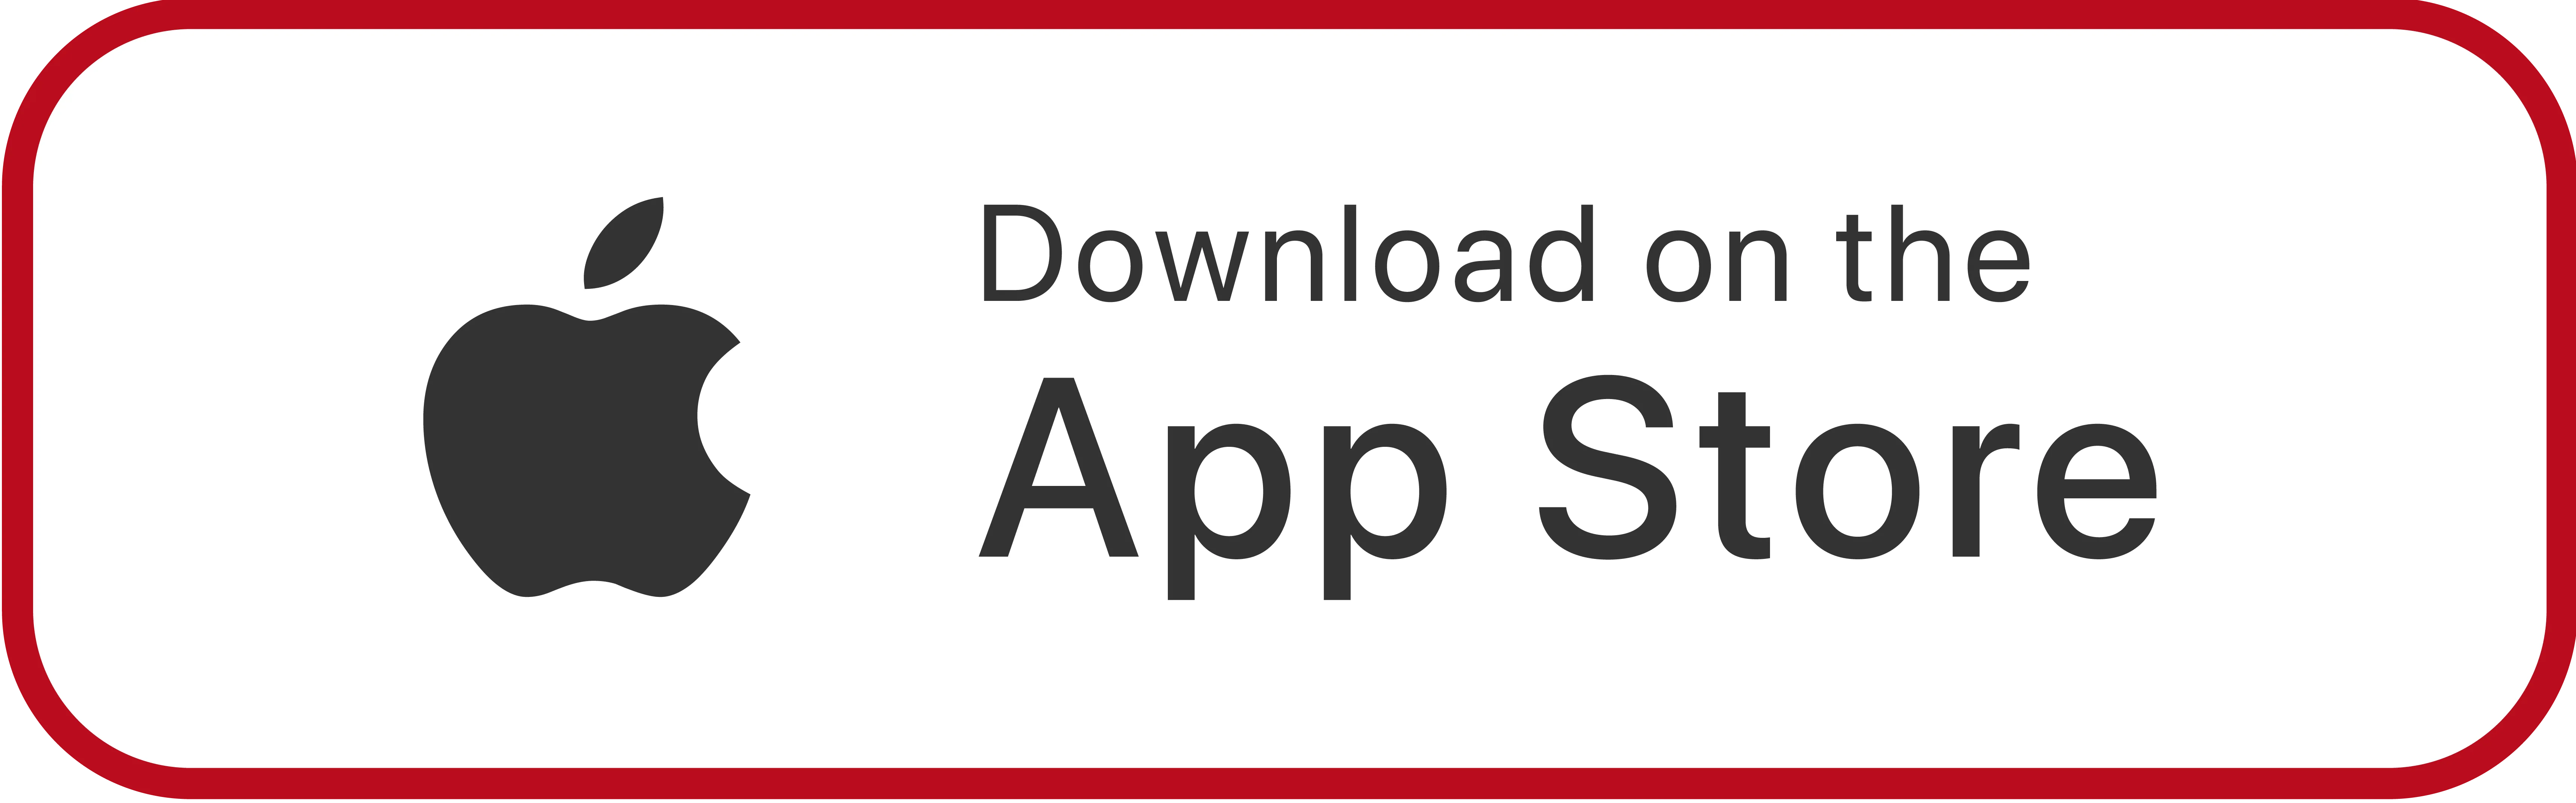 Berijders app downloaden | App Store | Rebel Lease